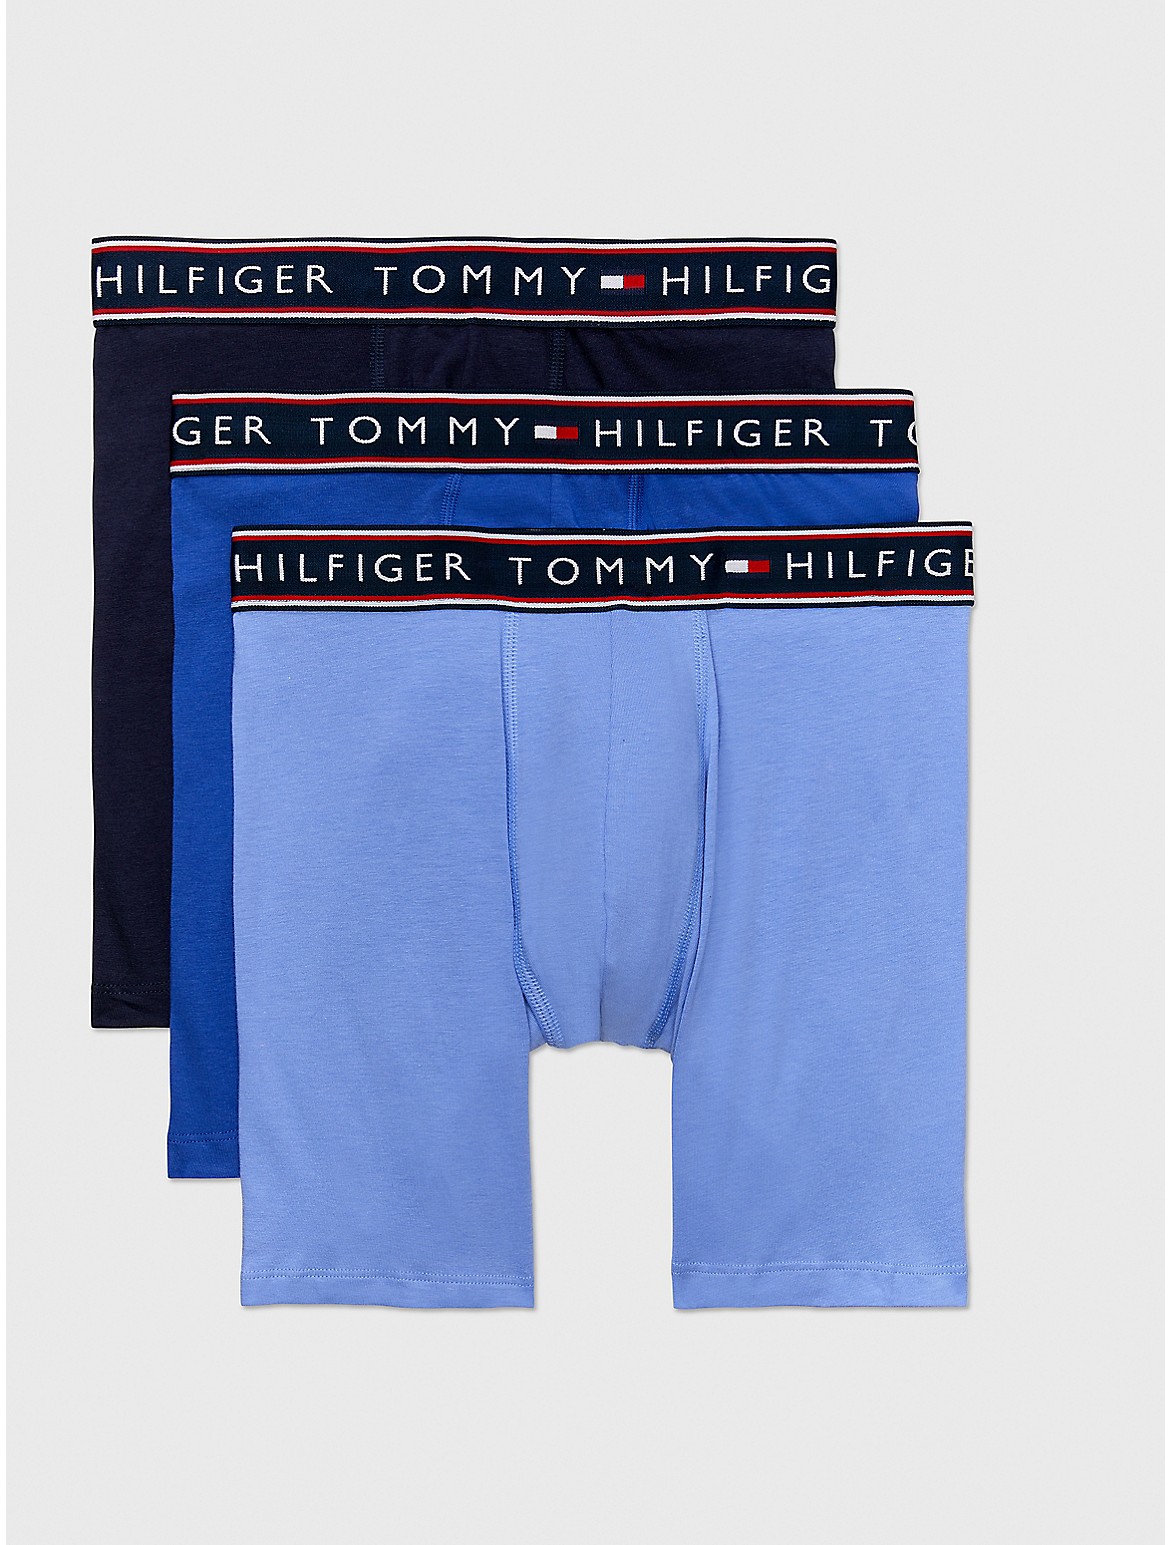 Tommy Hilfiger Men's Cotton Stretch Boxer Brief 3-Pack - Blue - L